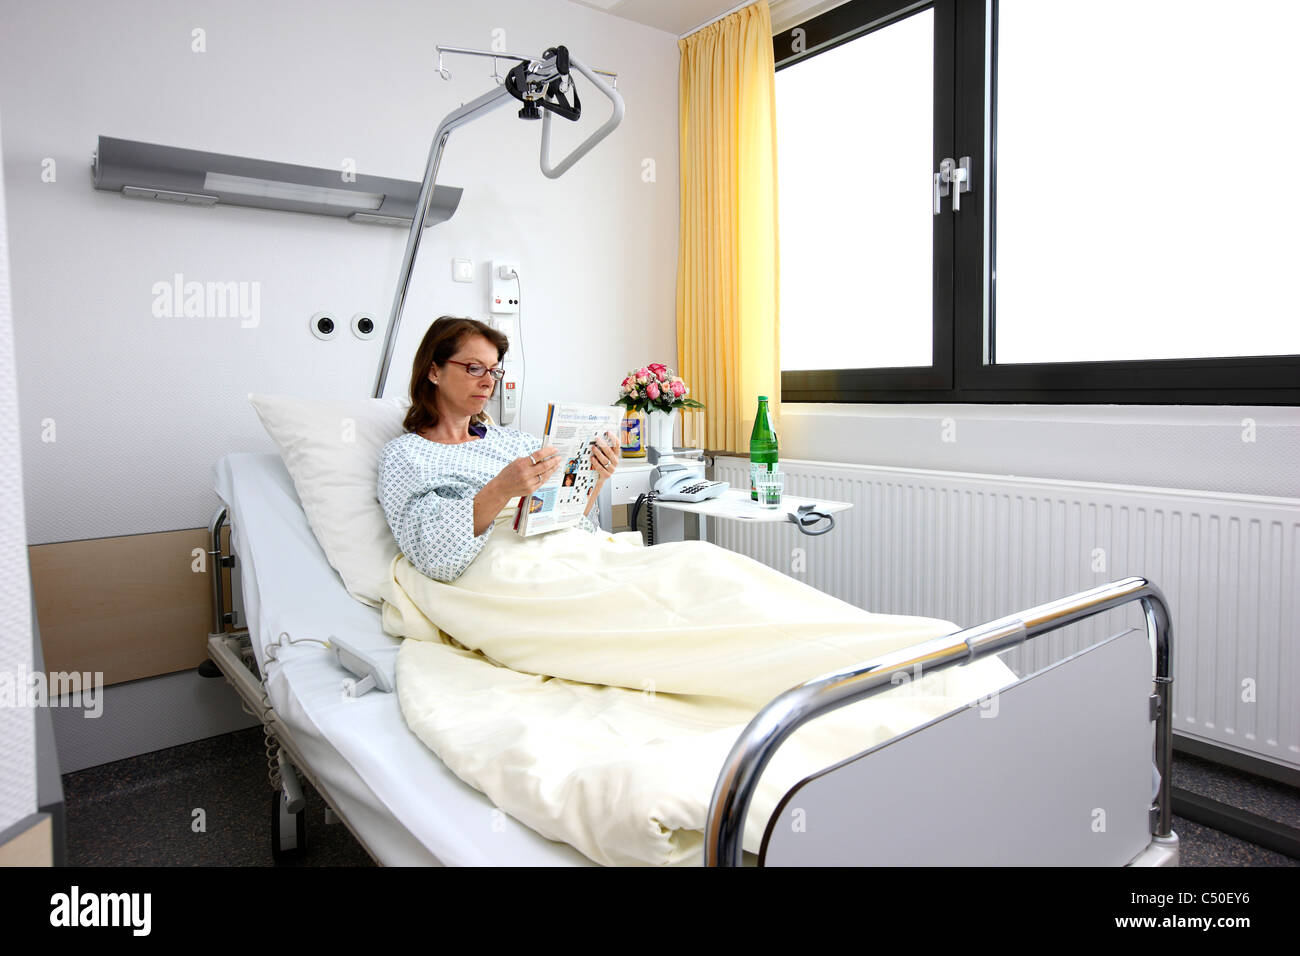 L'hôpital. Femme dans son lit dans un hôpital une-chambre. Banque D'Images